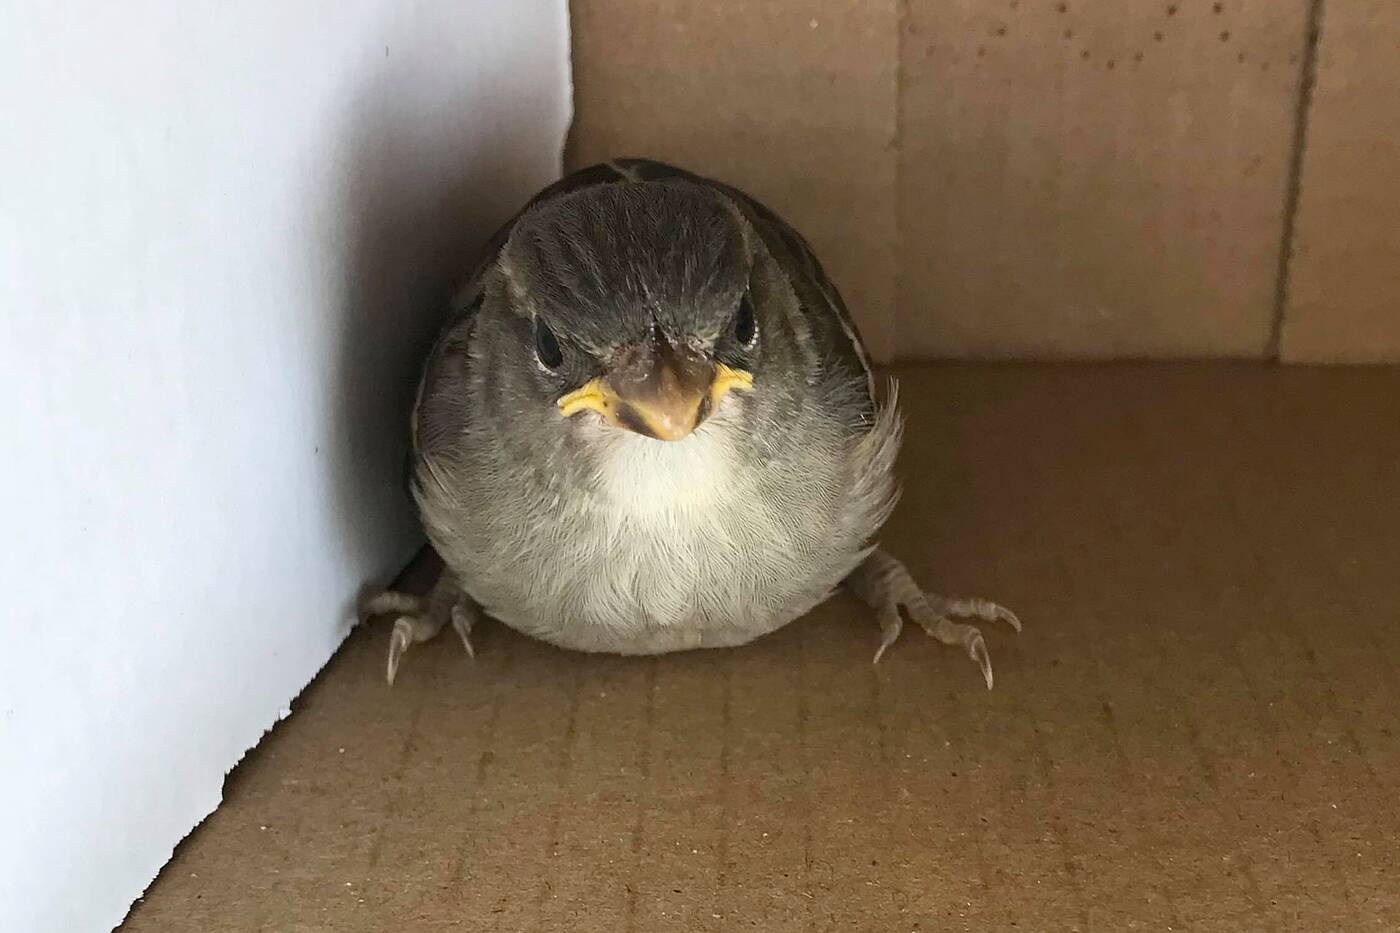 injured baby bird